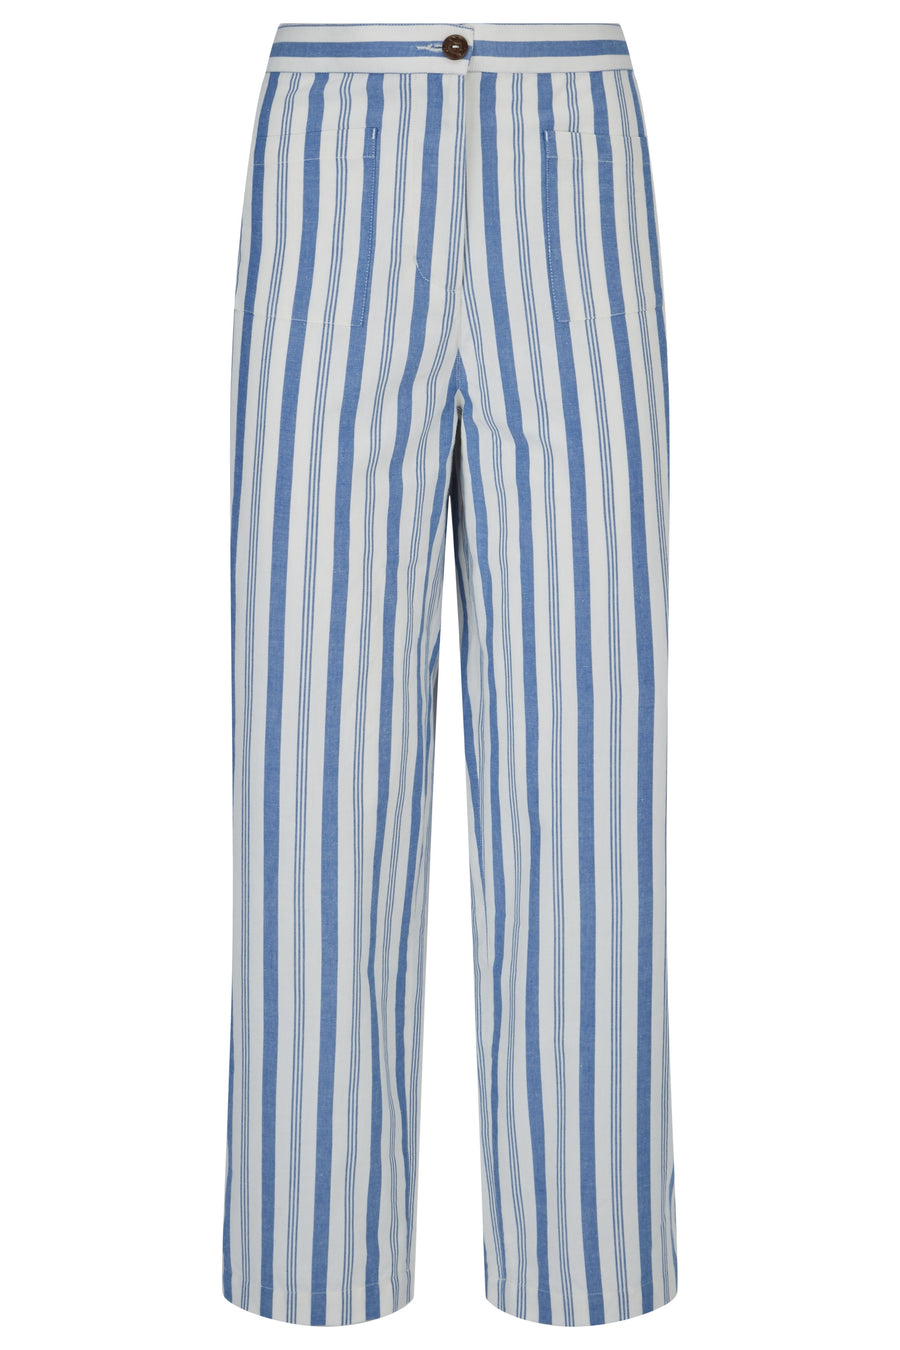 People Tree Pantalon à rayures de commerce équitable, éthique et durable en coton de Blue Stripe 100% biologique